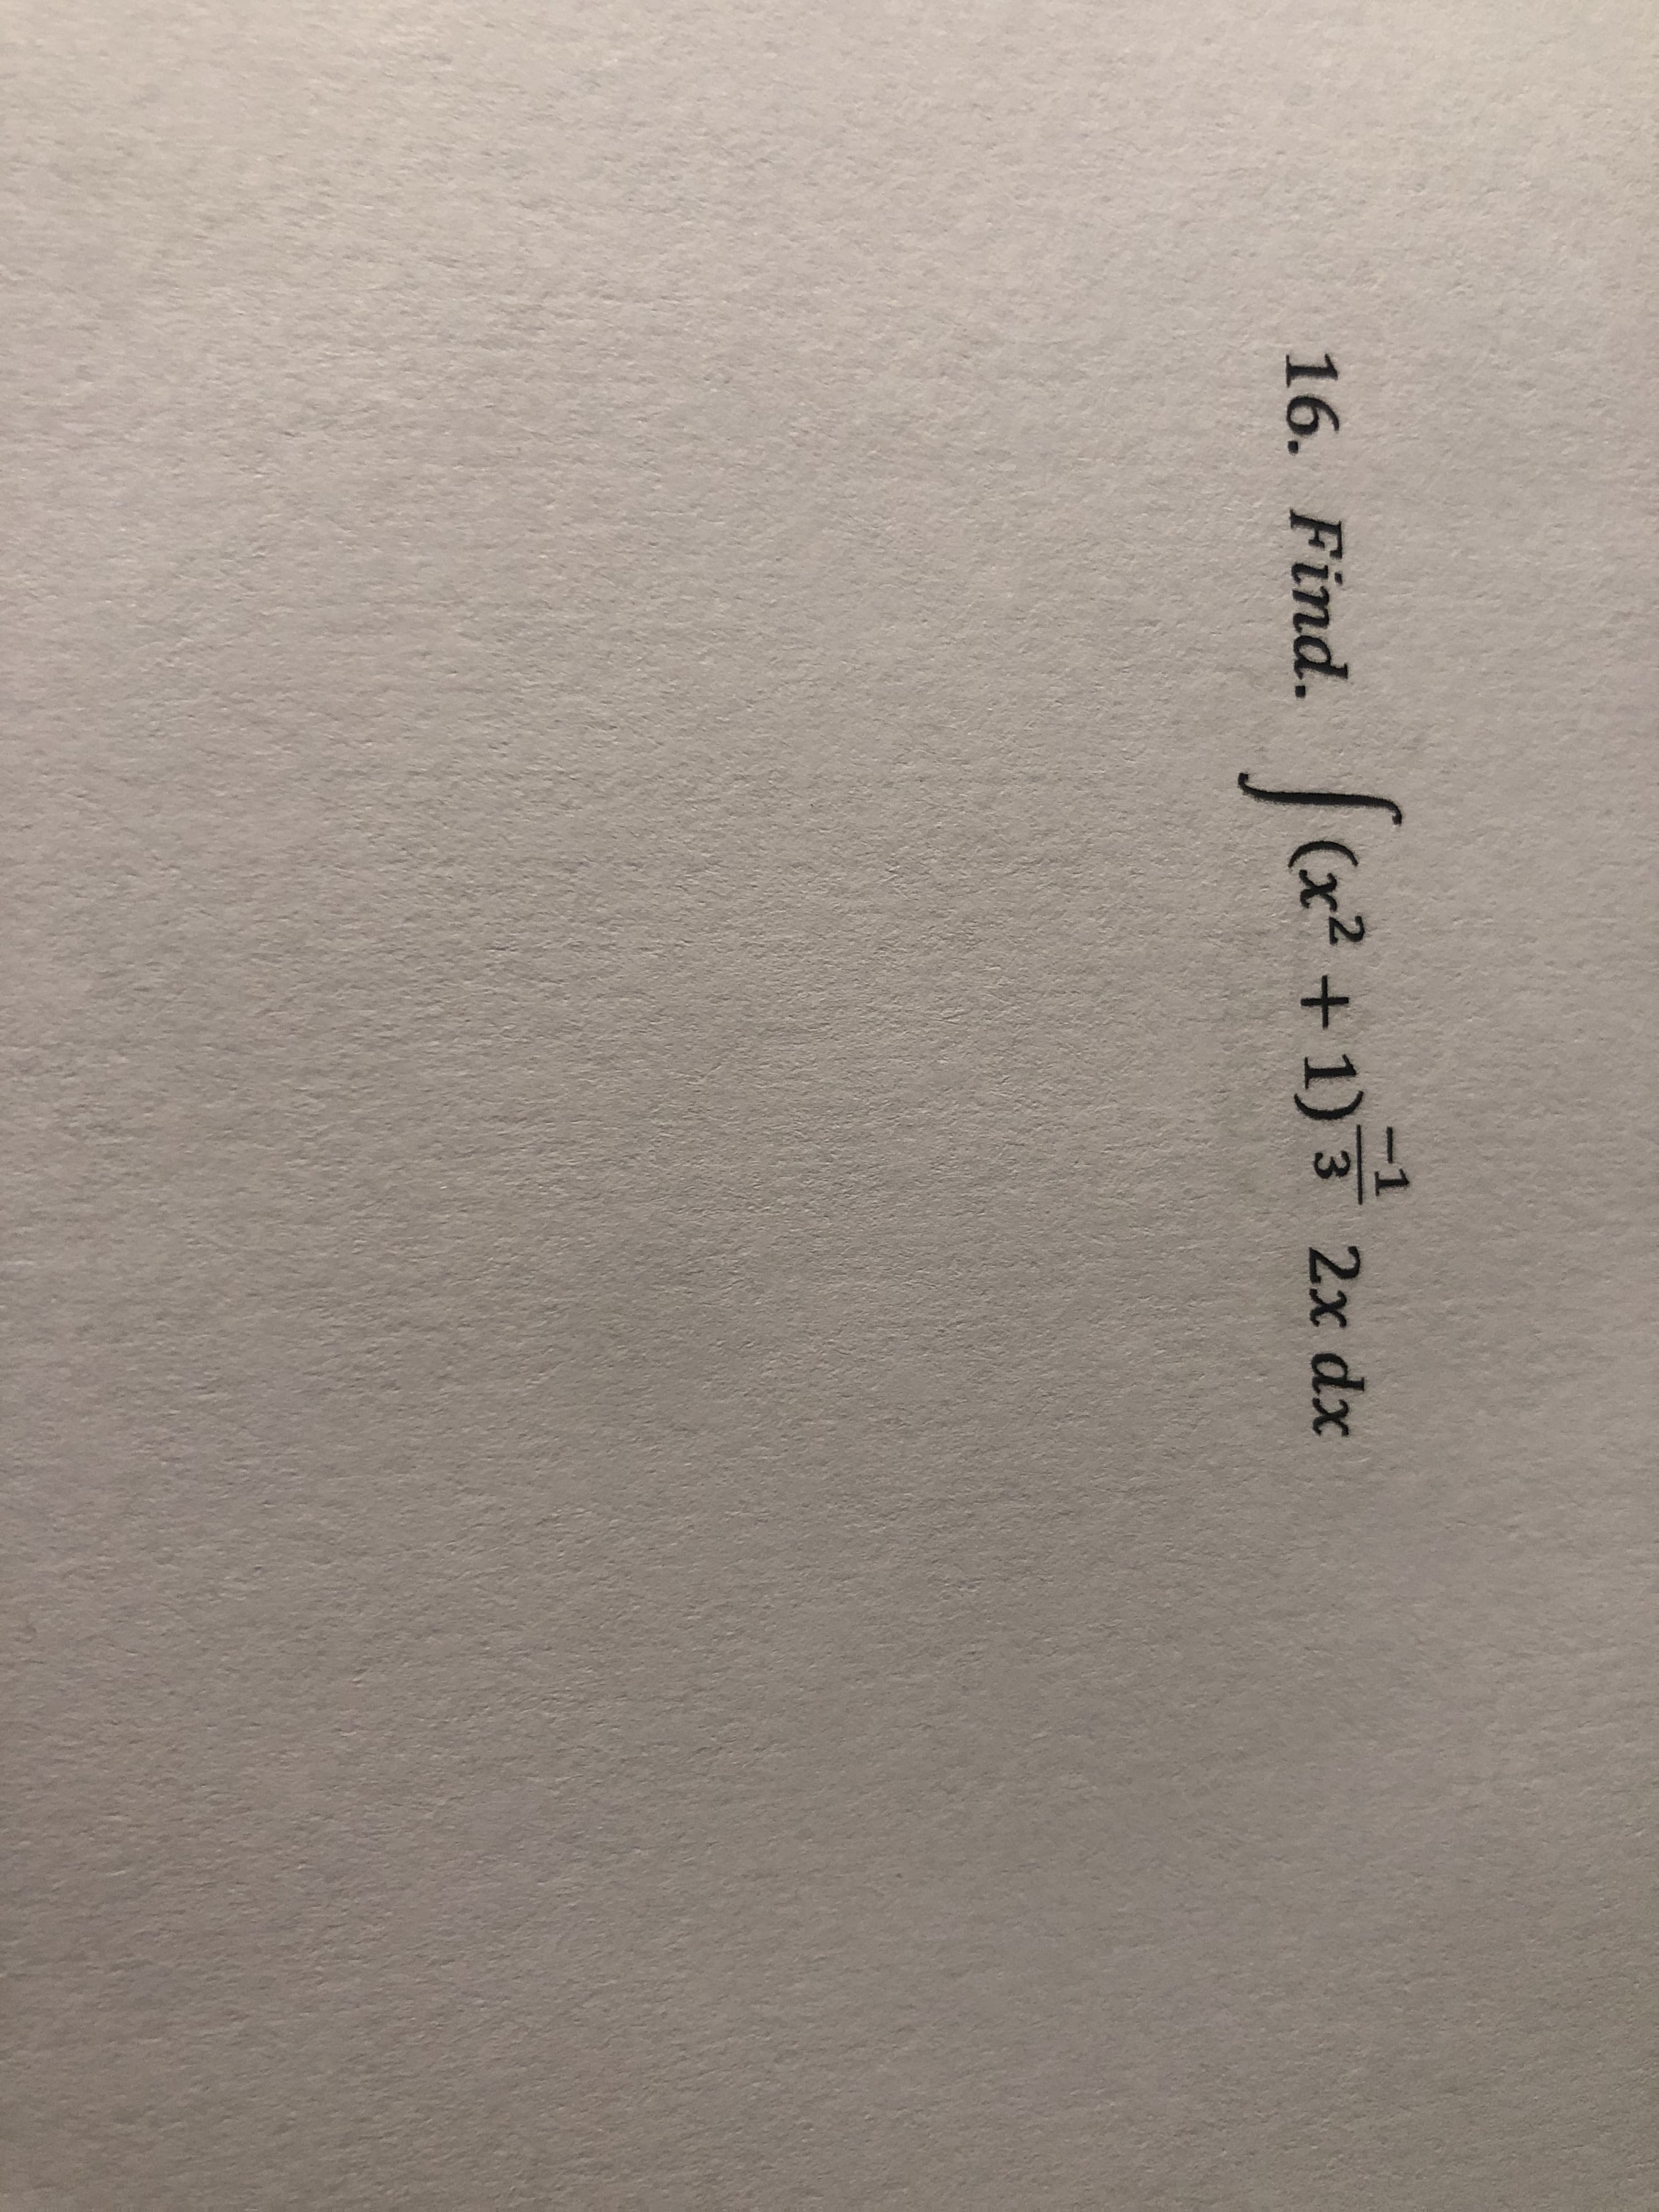 Find.
(x²+1)3 2x dx
